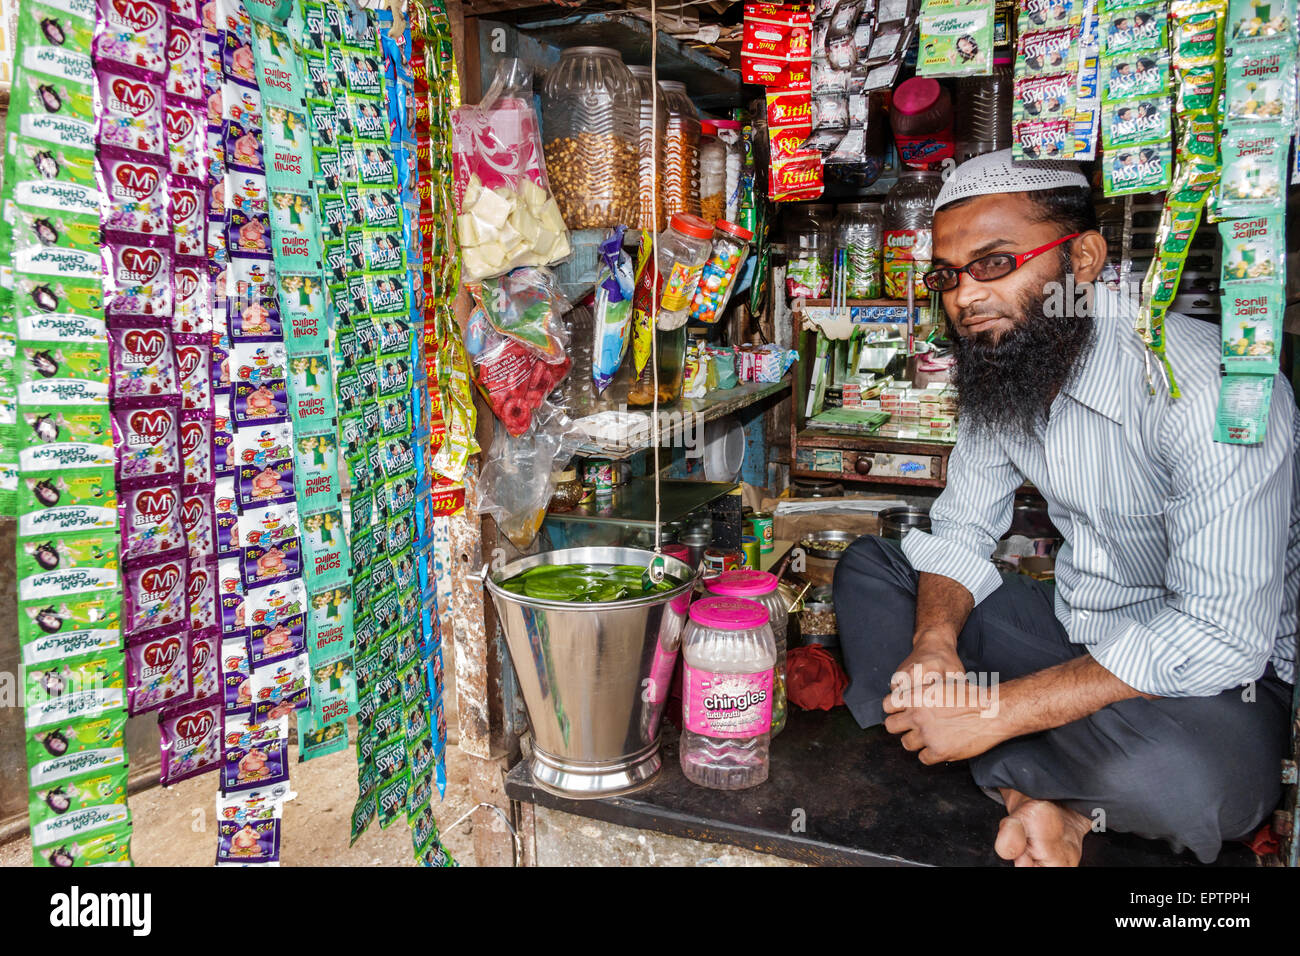 Mumbai India,Dharavi,60 piedi strada,slum,basso reddito,povero,povertà,uomo uomini maschio,musulmano,negozio di convenienza,stallo,proprietario,lozioni,pacchetti,India150228084 Foto Stock